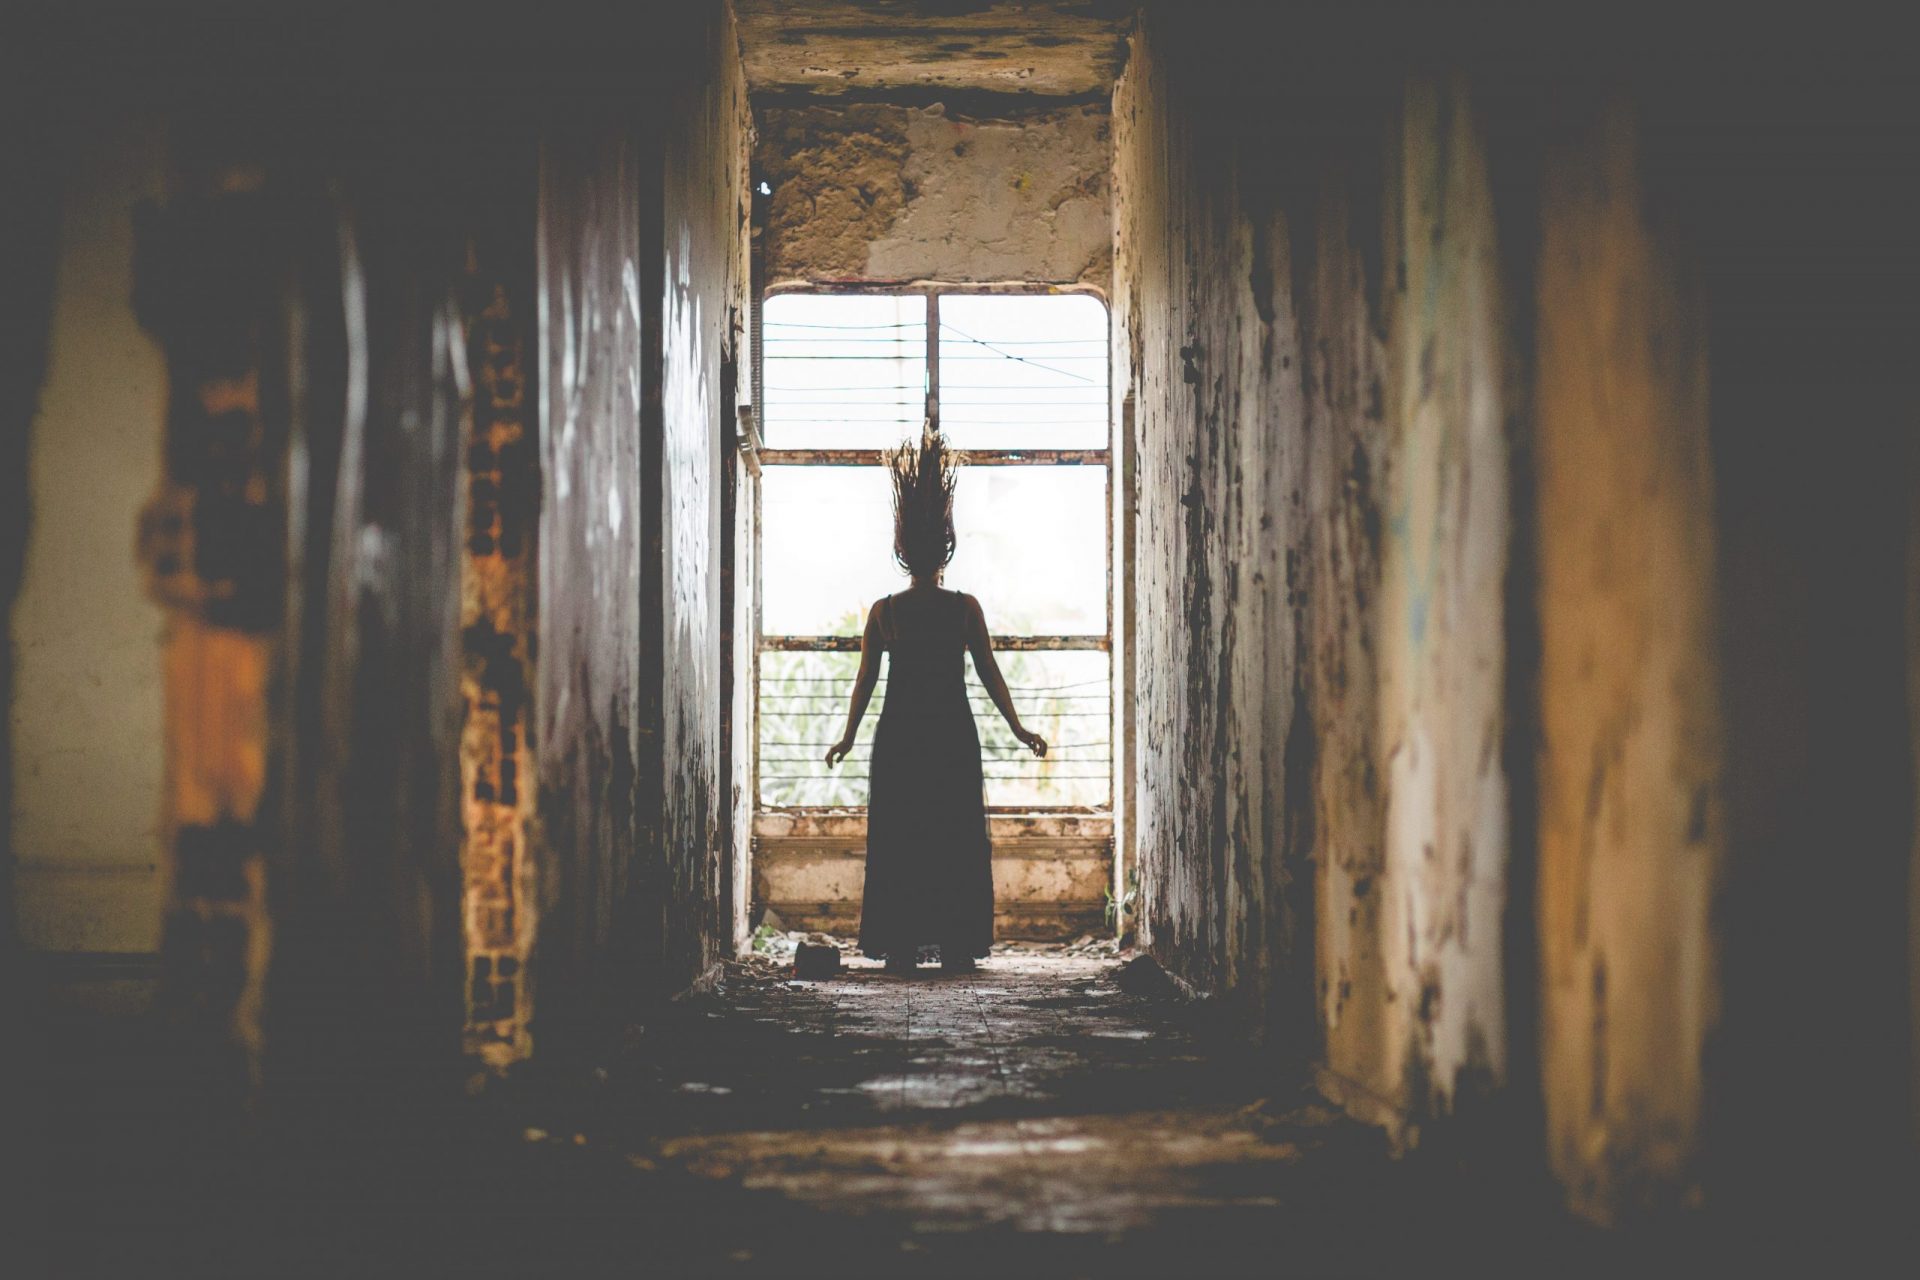 Eine Frau steht in einem Korridor und ihr stehen die Haare zu Berge